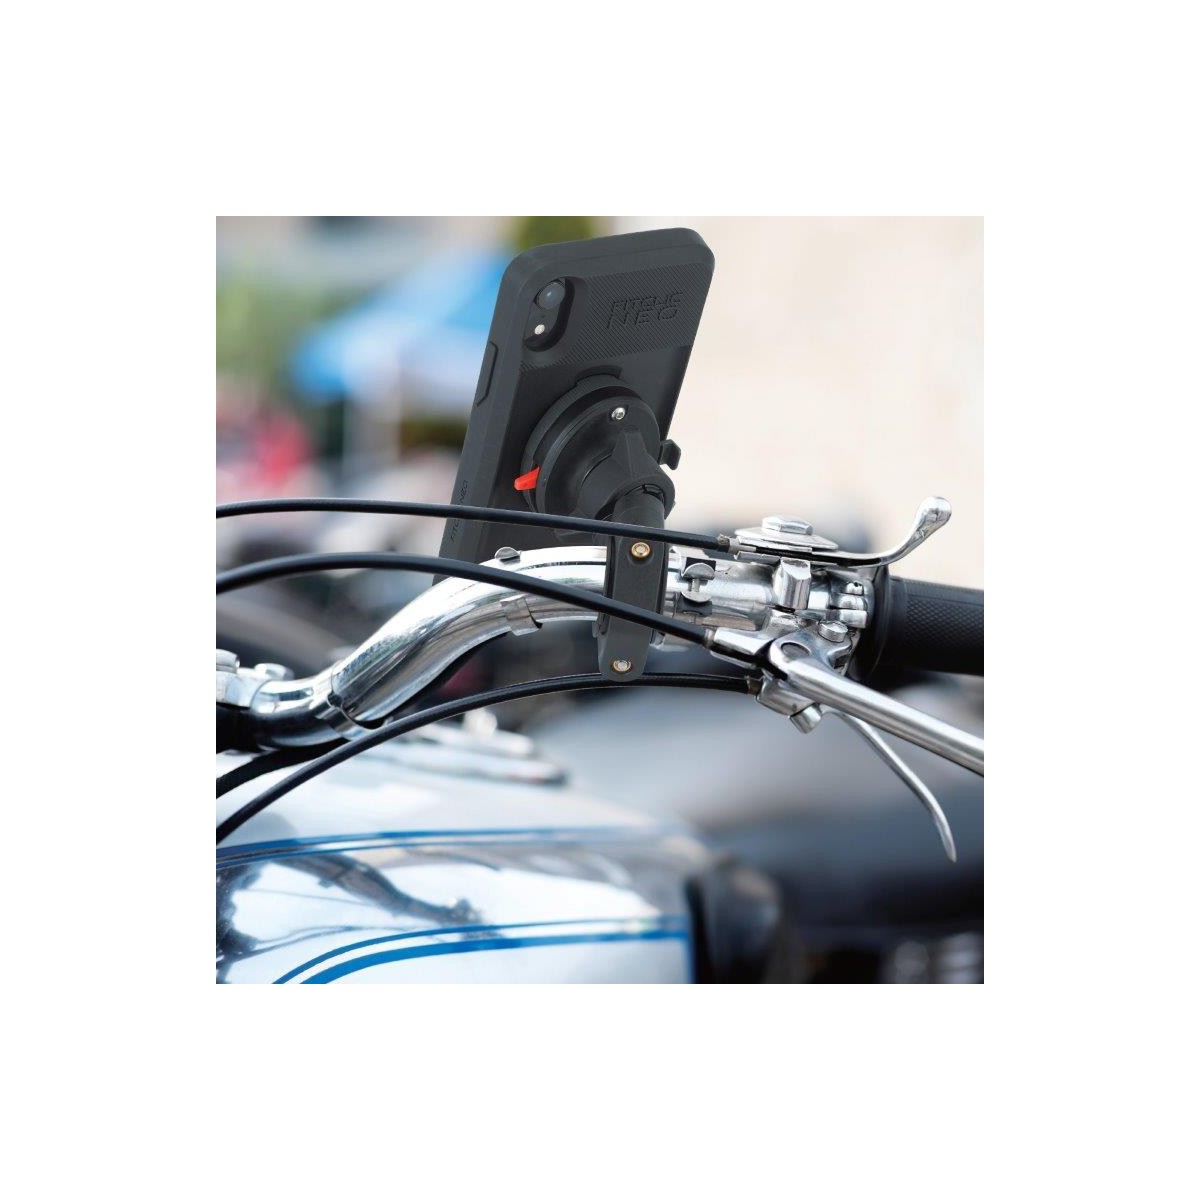 FitClic Neo Motorrad Kit für iPhone 11